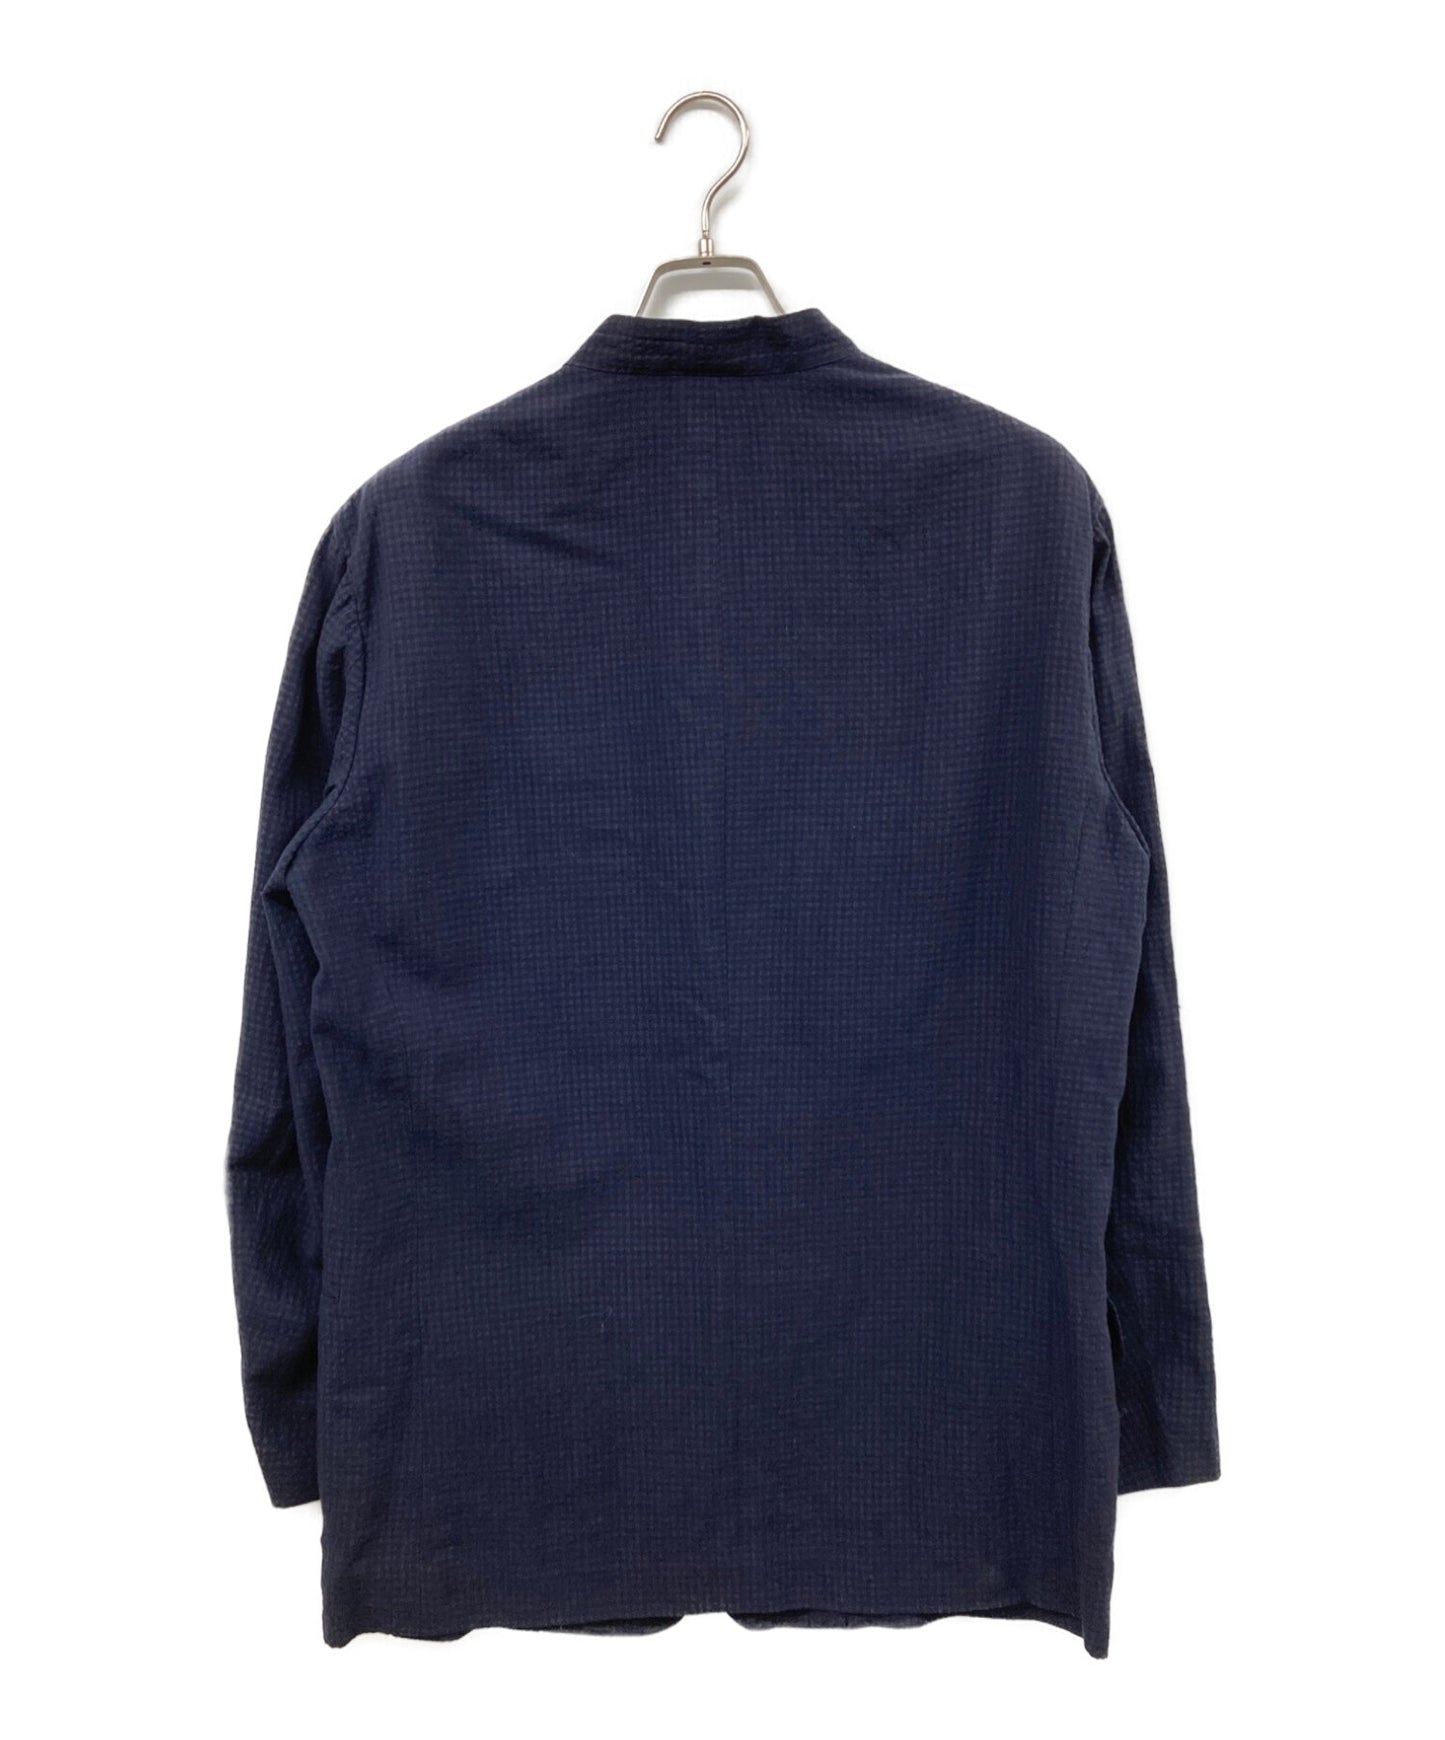 [Pre-owned] ISSEY MIYAKE MEN Seersucker stand collar jacket ME01FD603